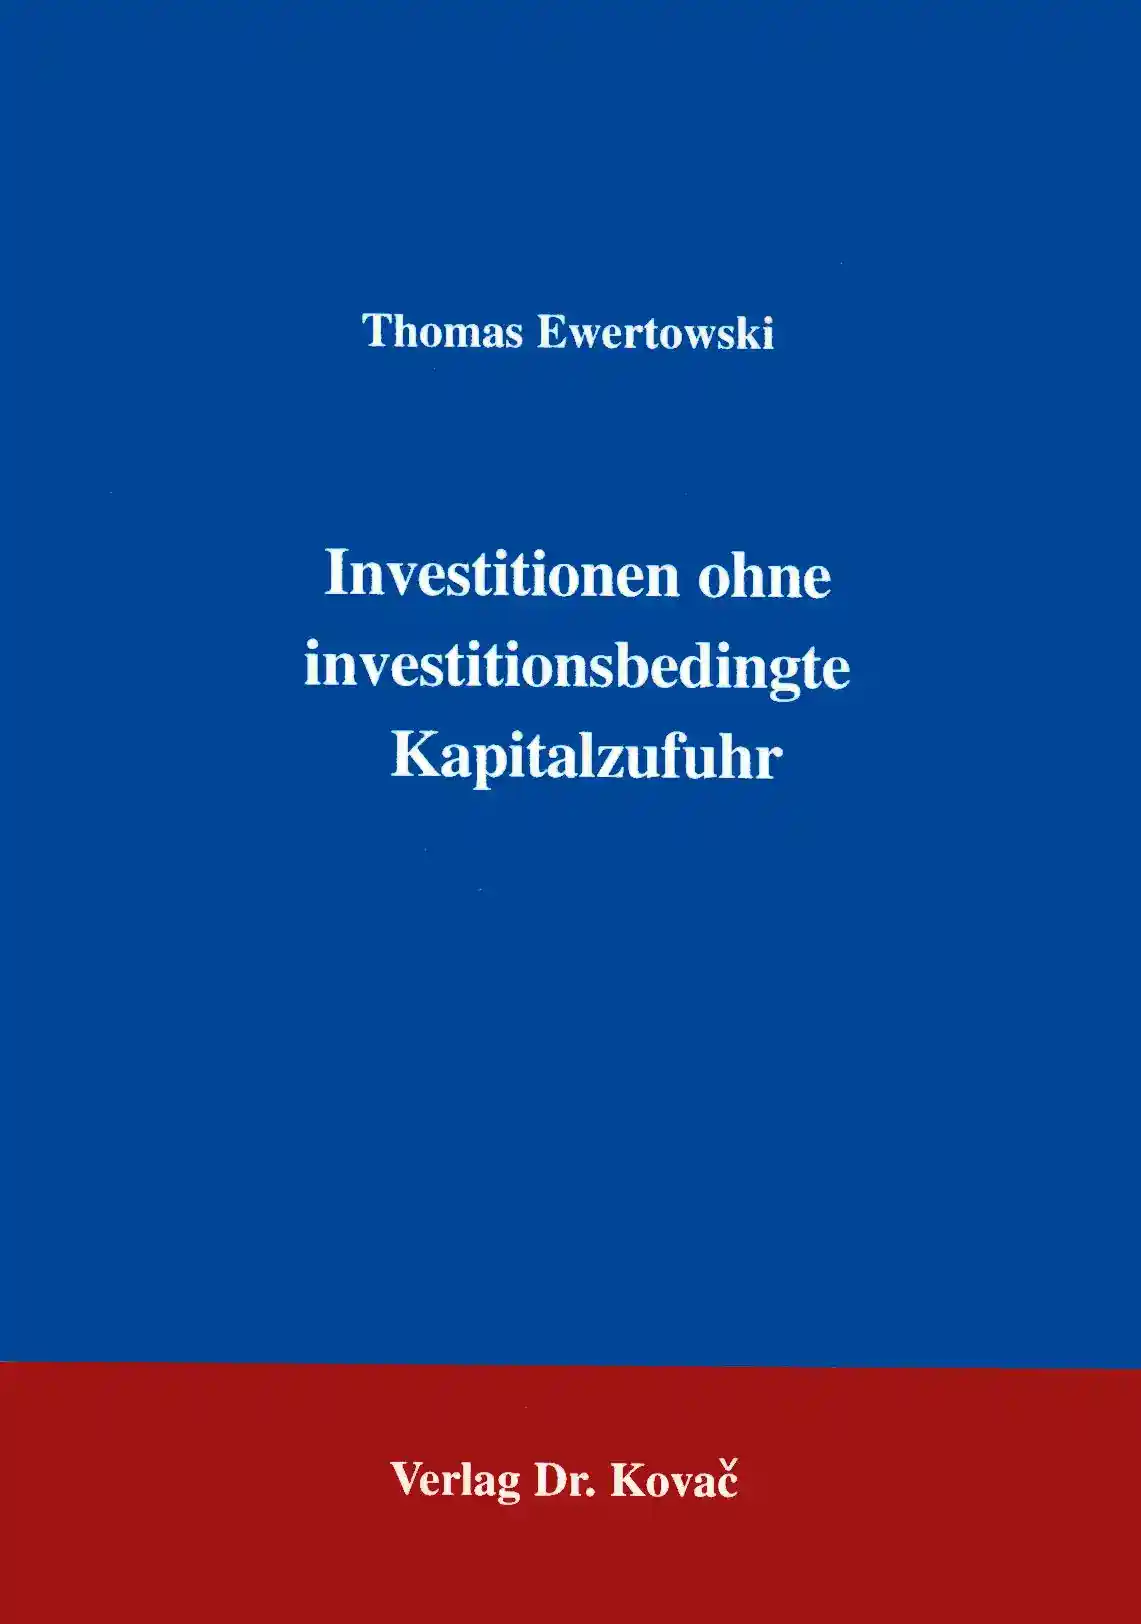 Investition ohne investitionsbedingte Kapitalzufuhr (Forschungsarbeit)